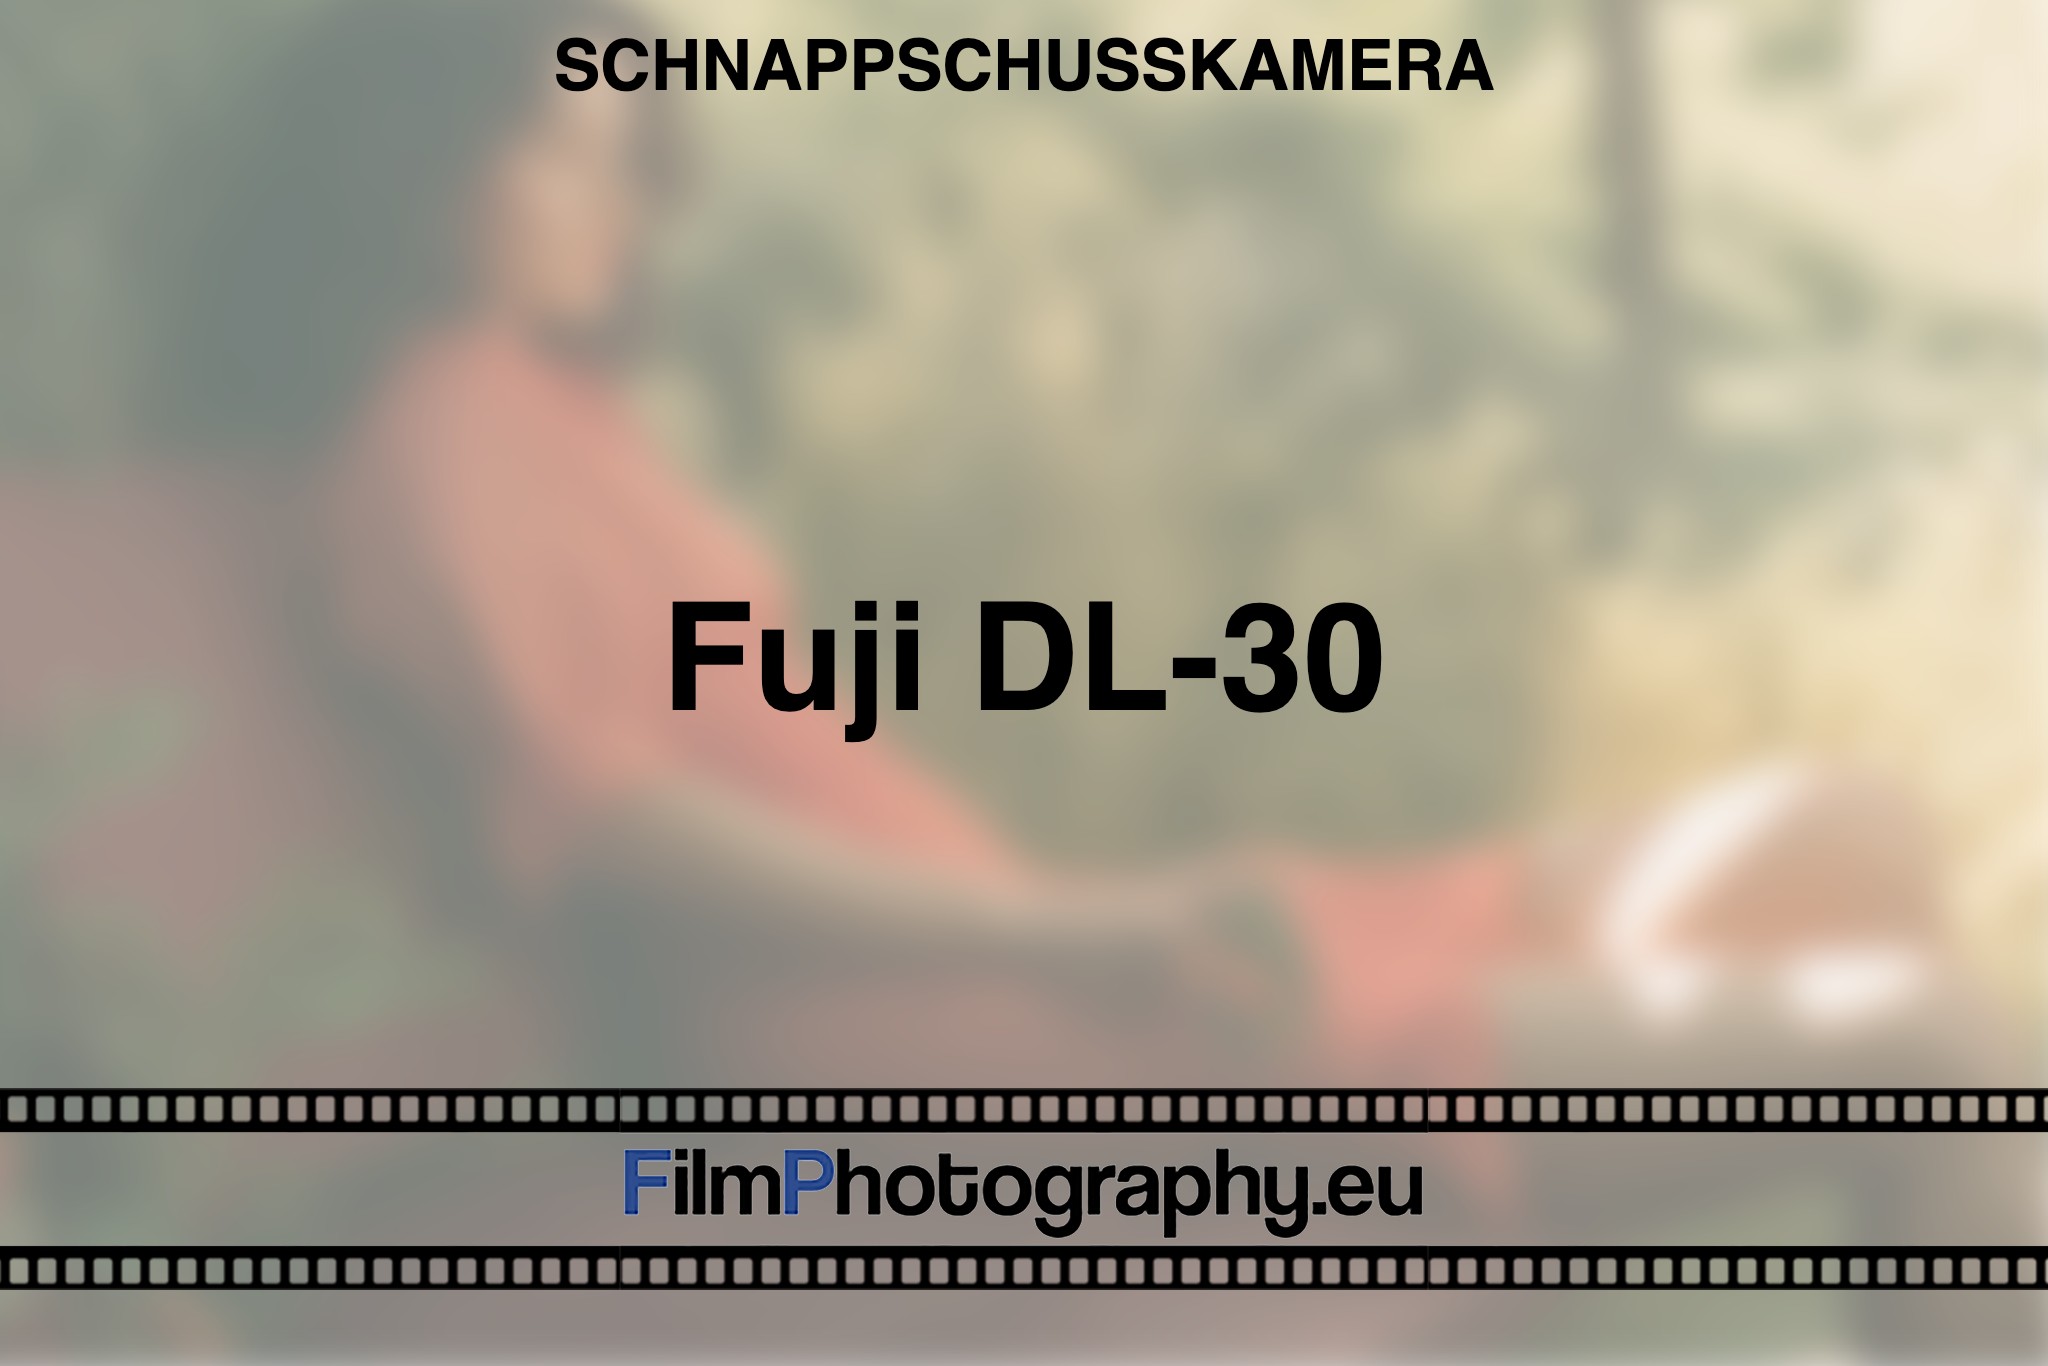 fuji-dl-30-schnappschusskamera-bnv